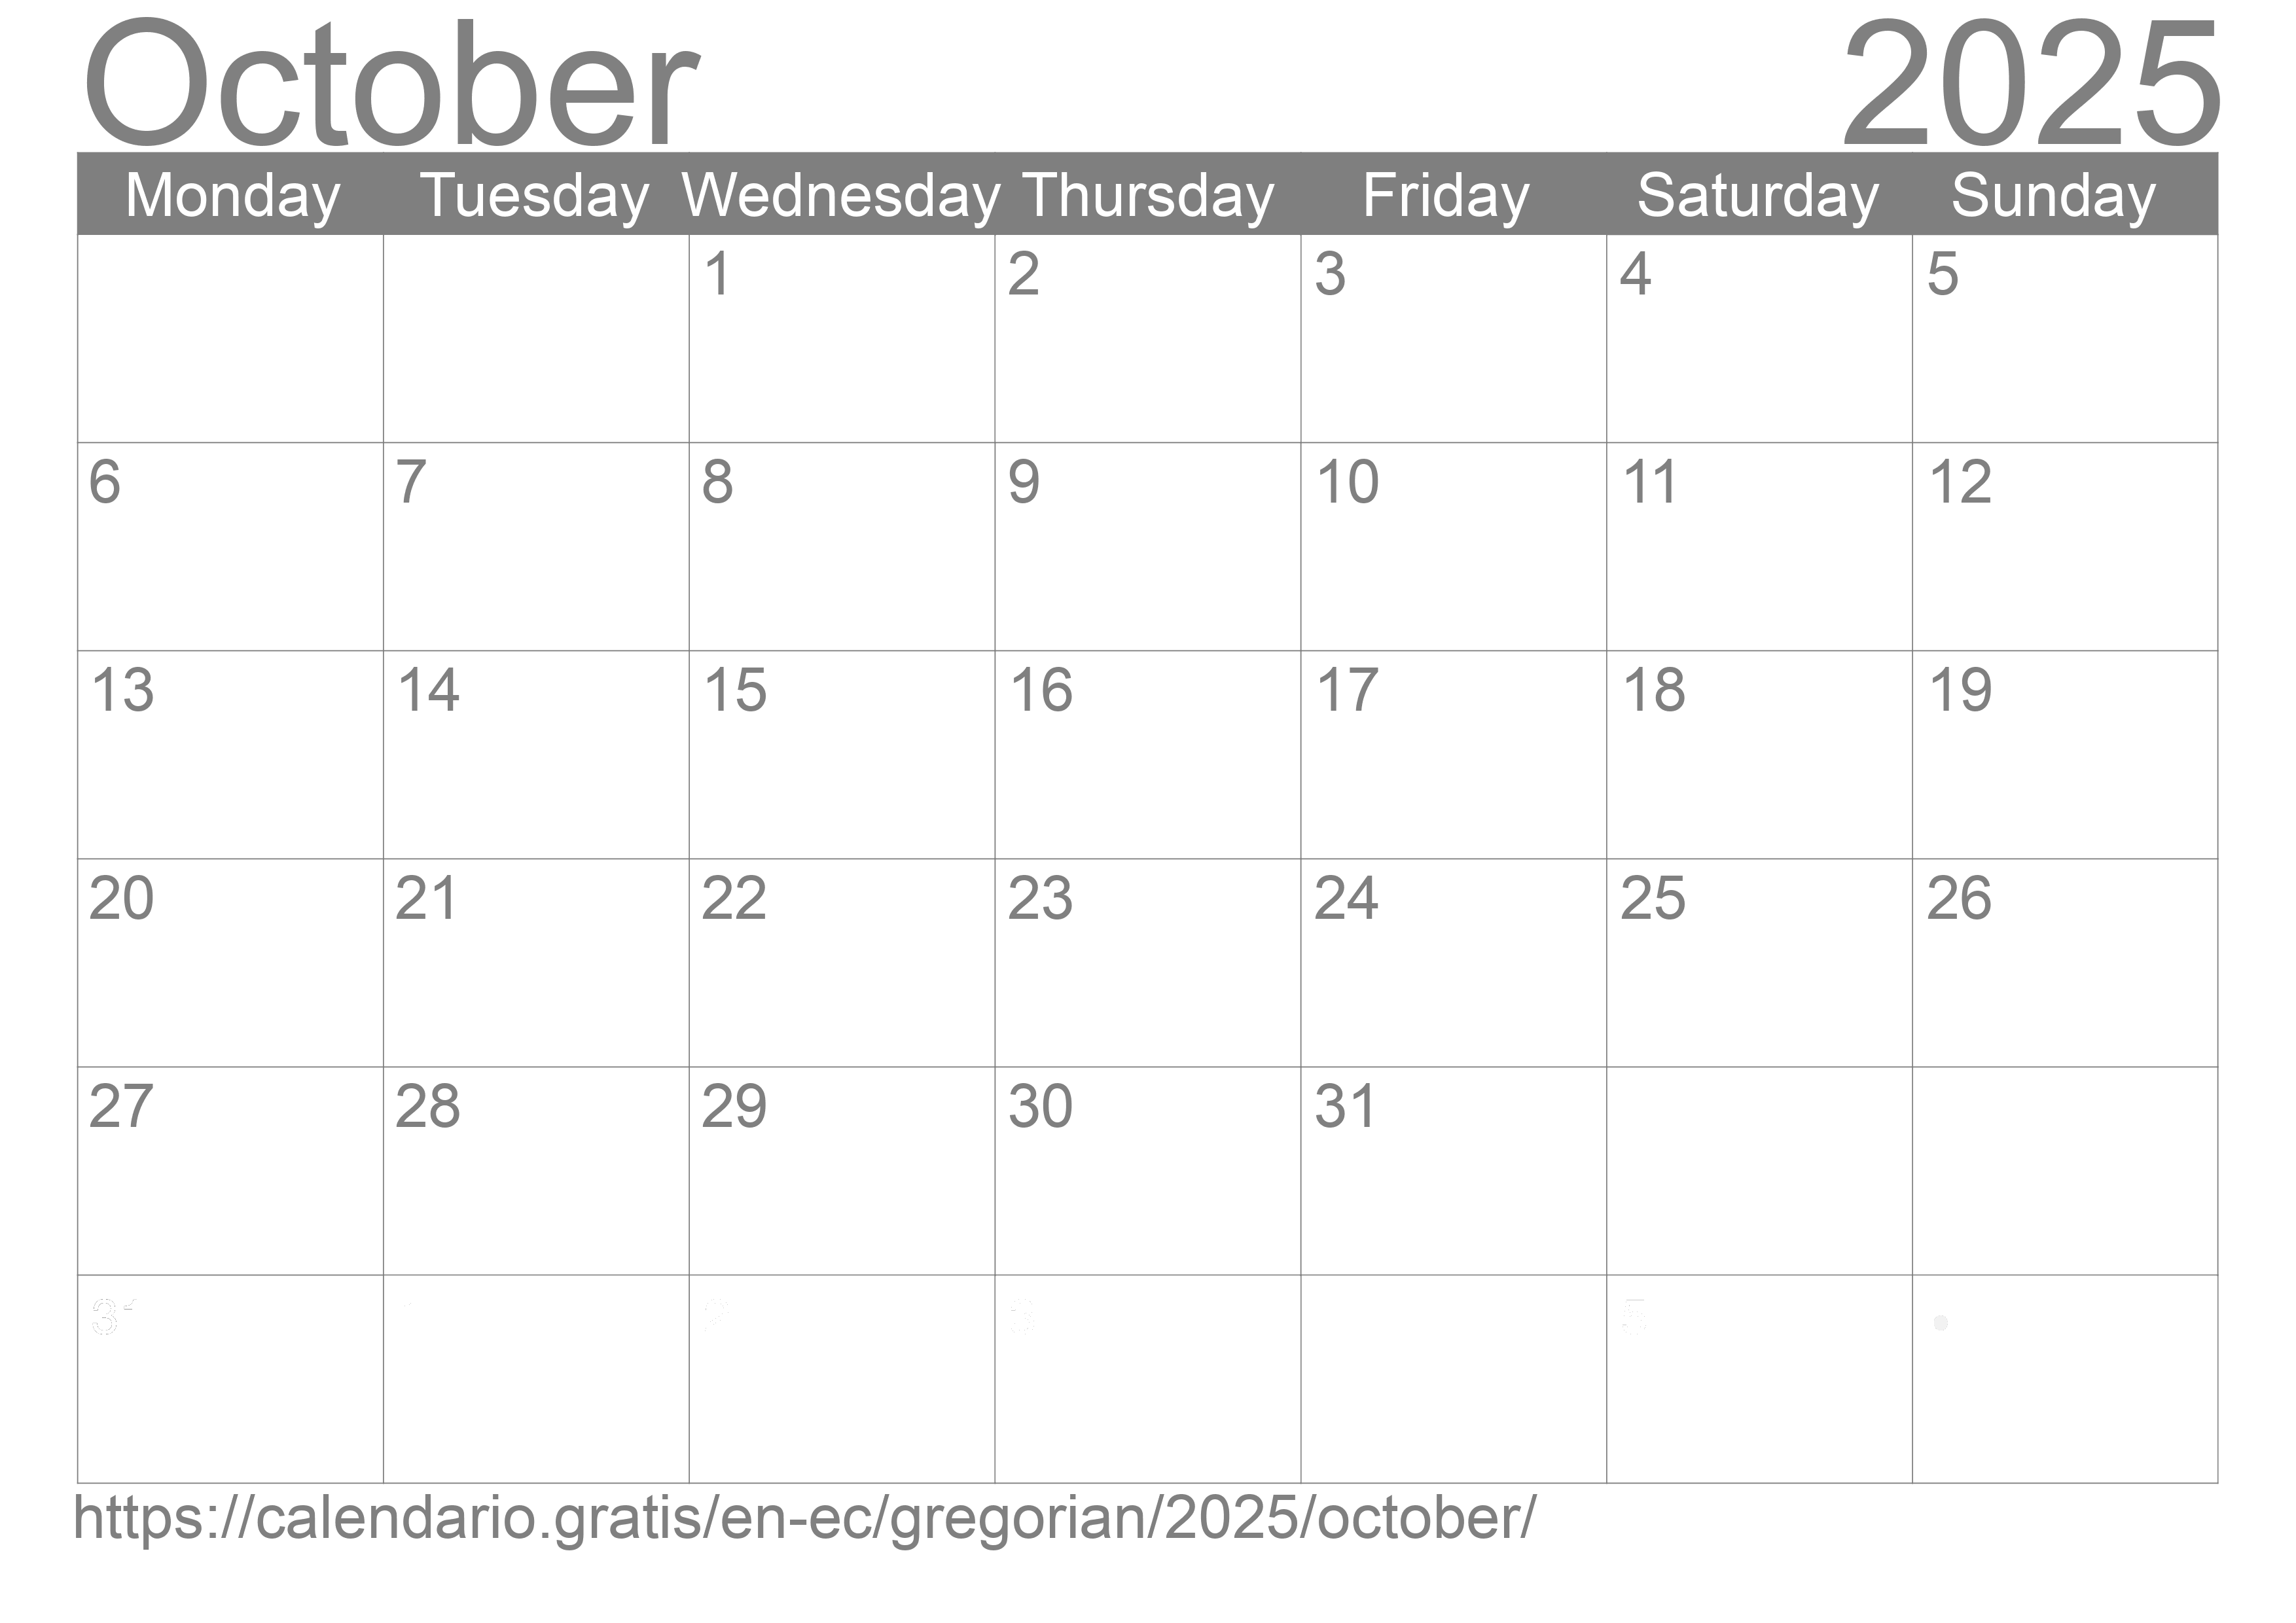 Calendar October 2025 to print